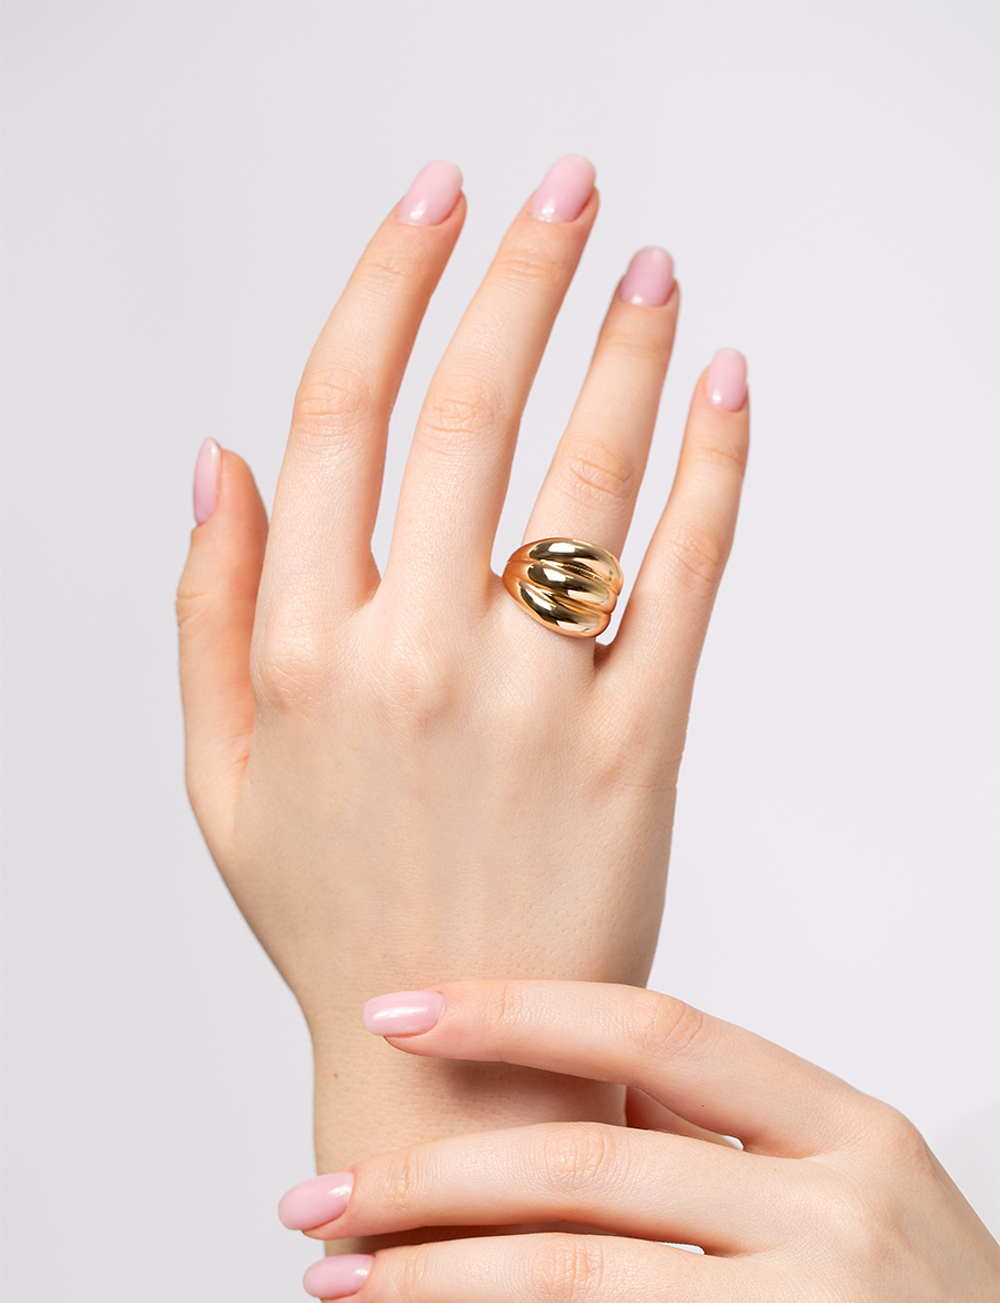 Женское кольцо из розового золота 585 пробы без вставки (арт. 121-2190)